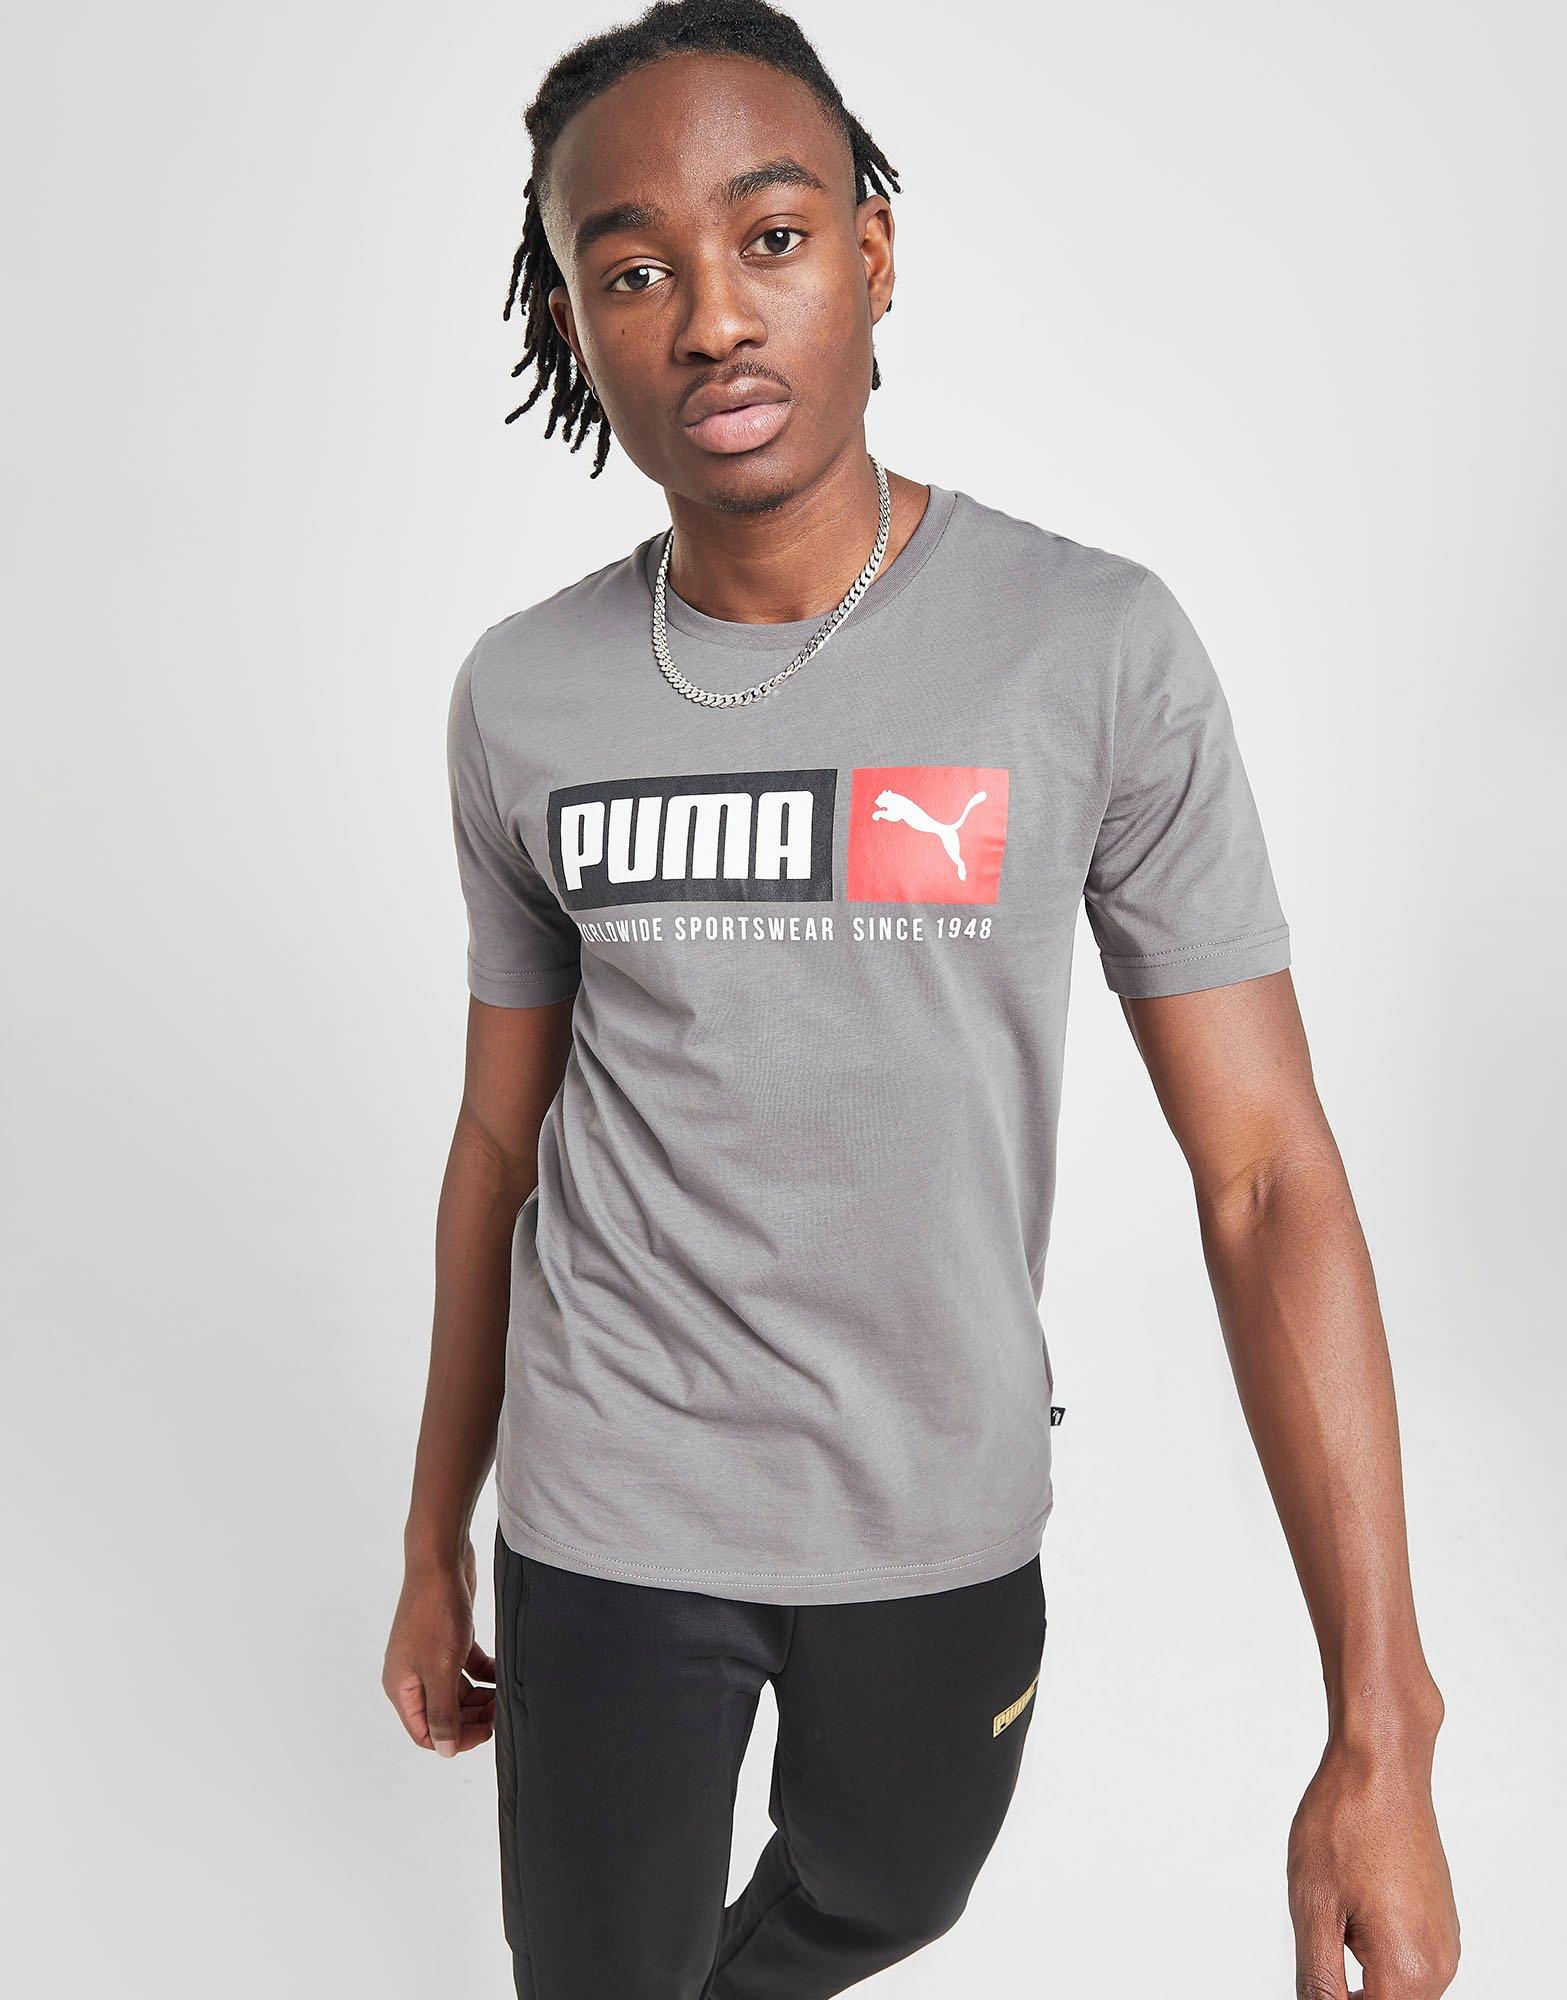 Puma | JD Sports